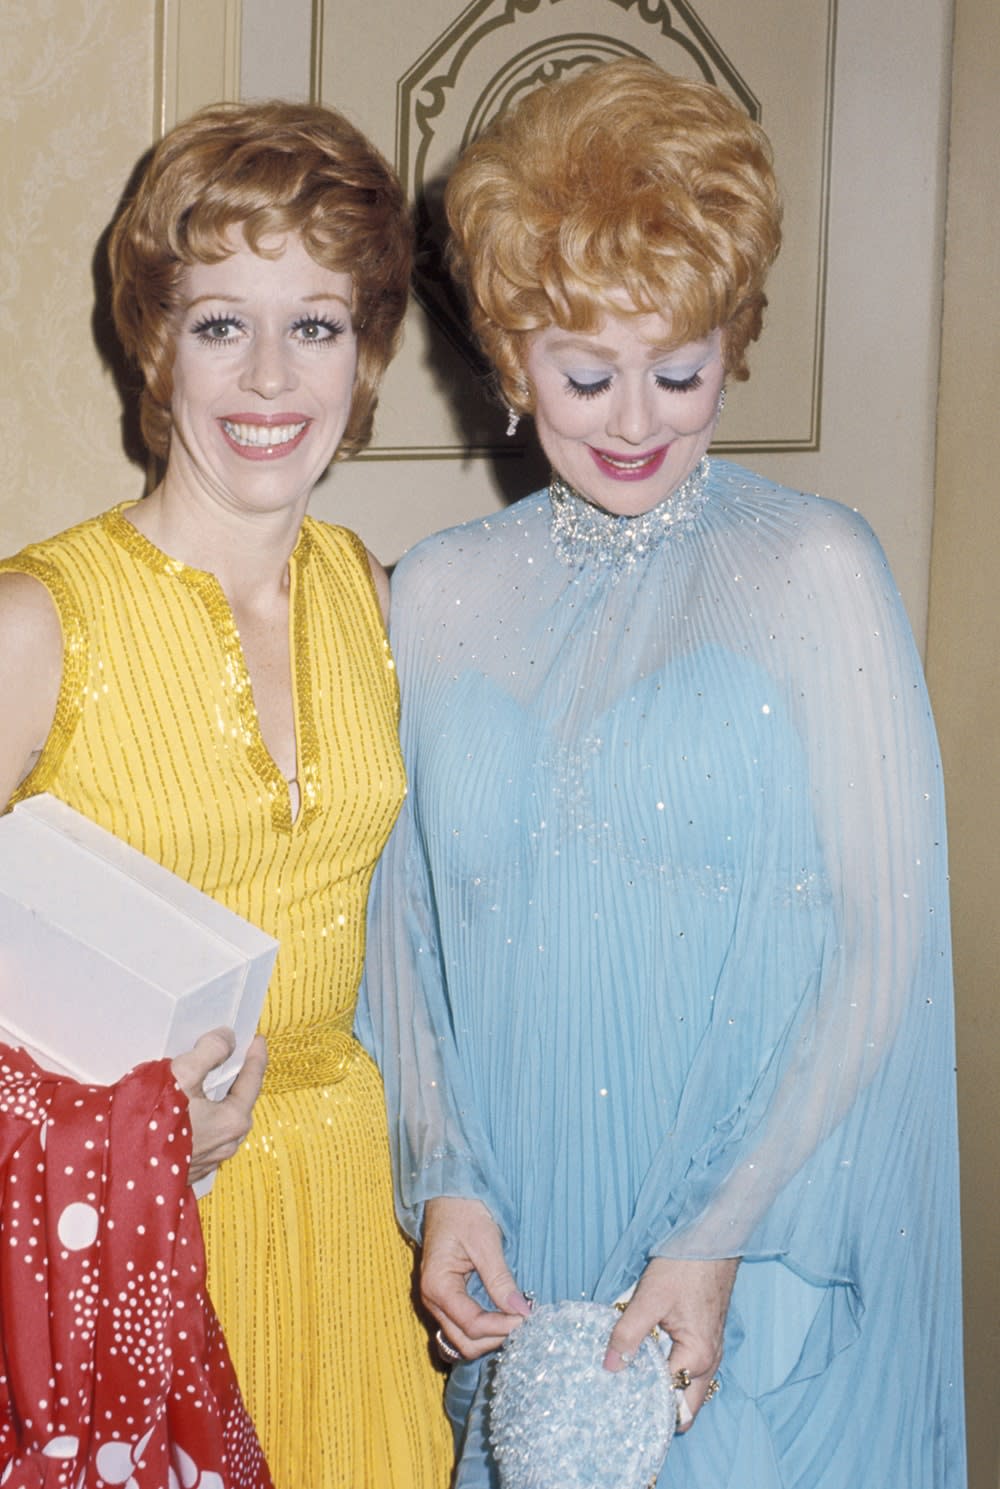 Carol Burnett wearing a yellow dress next to Lucille Ball wearing a blue dress